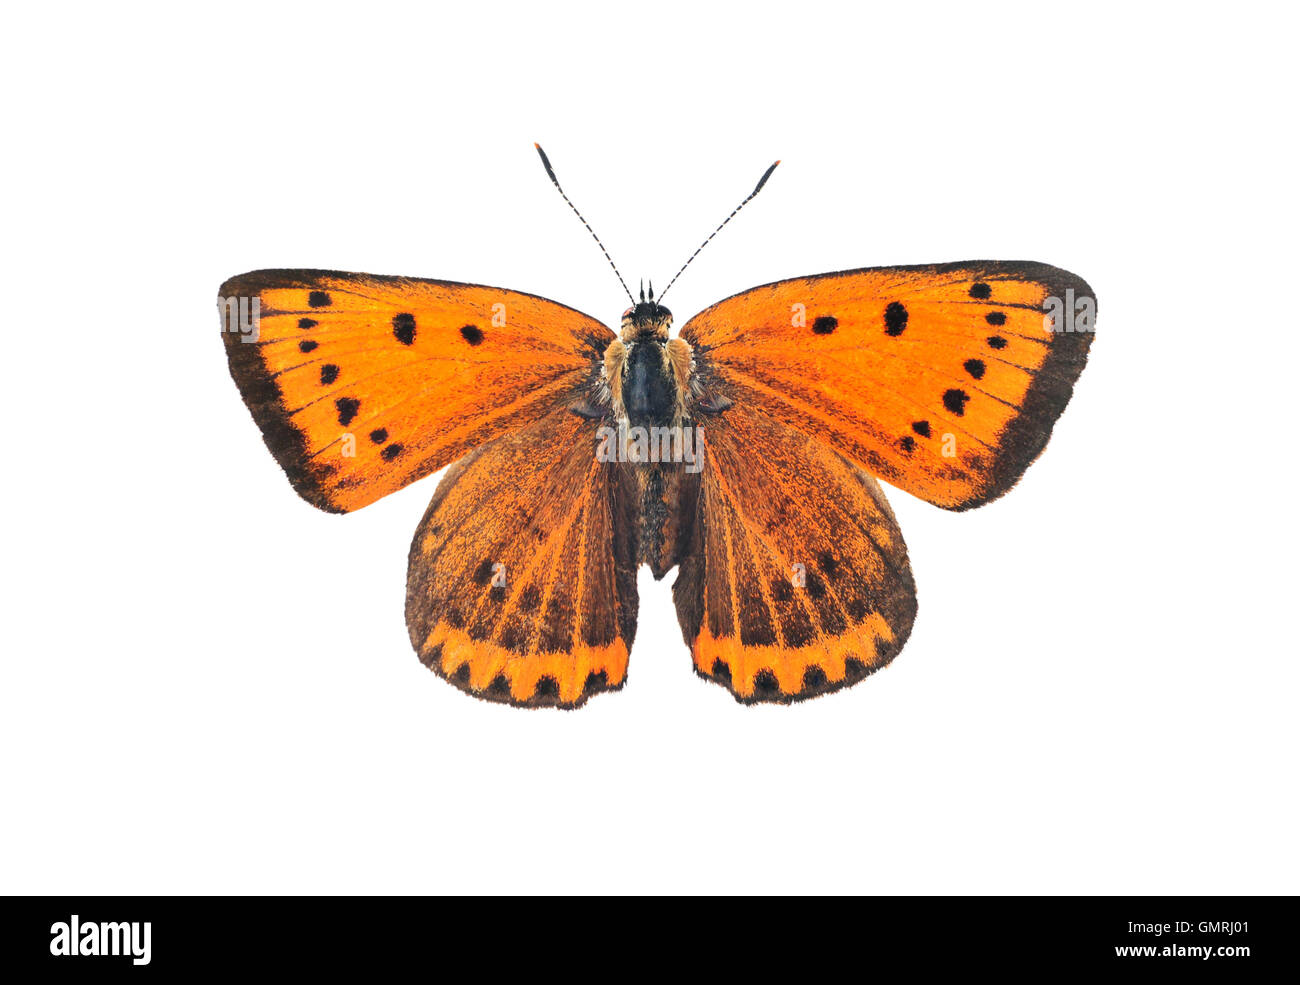 Rame di grandi dimensioni (a farfalla Lycaena dispar), isolata su uno sfondo bianco Foto Stock